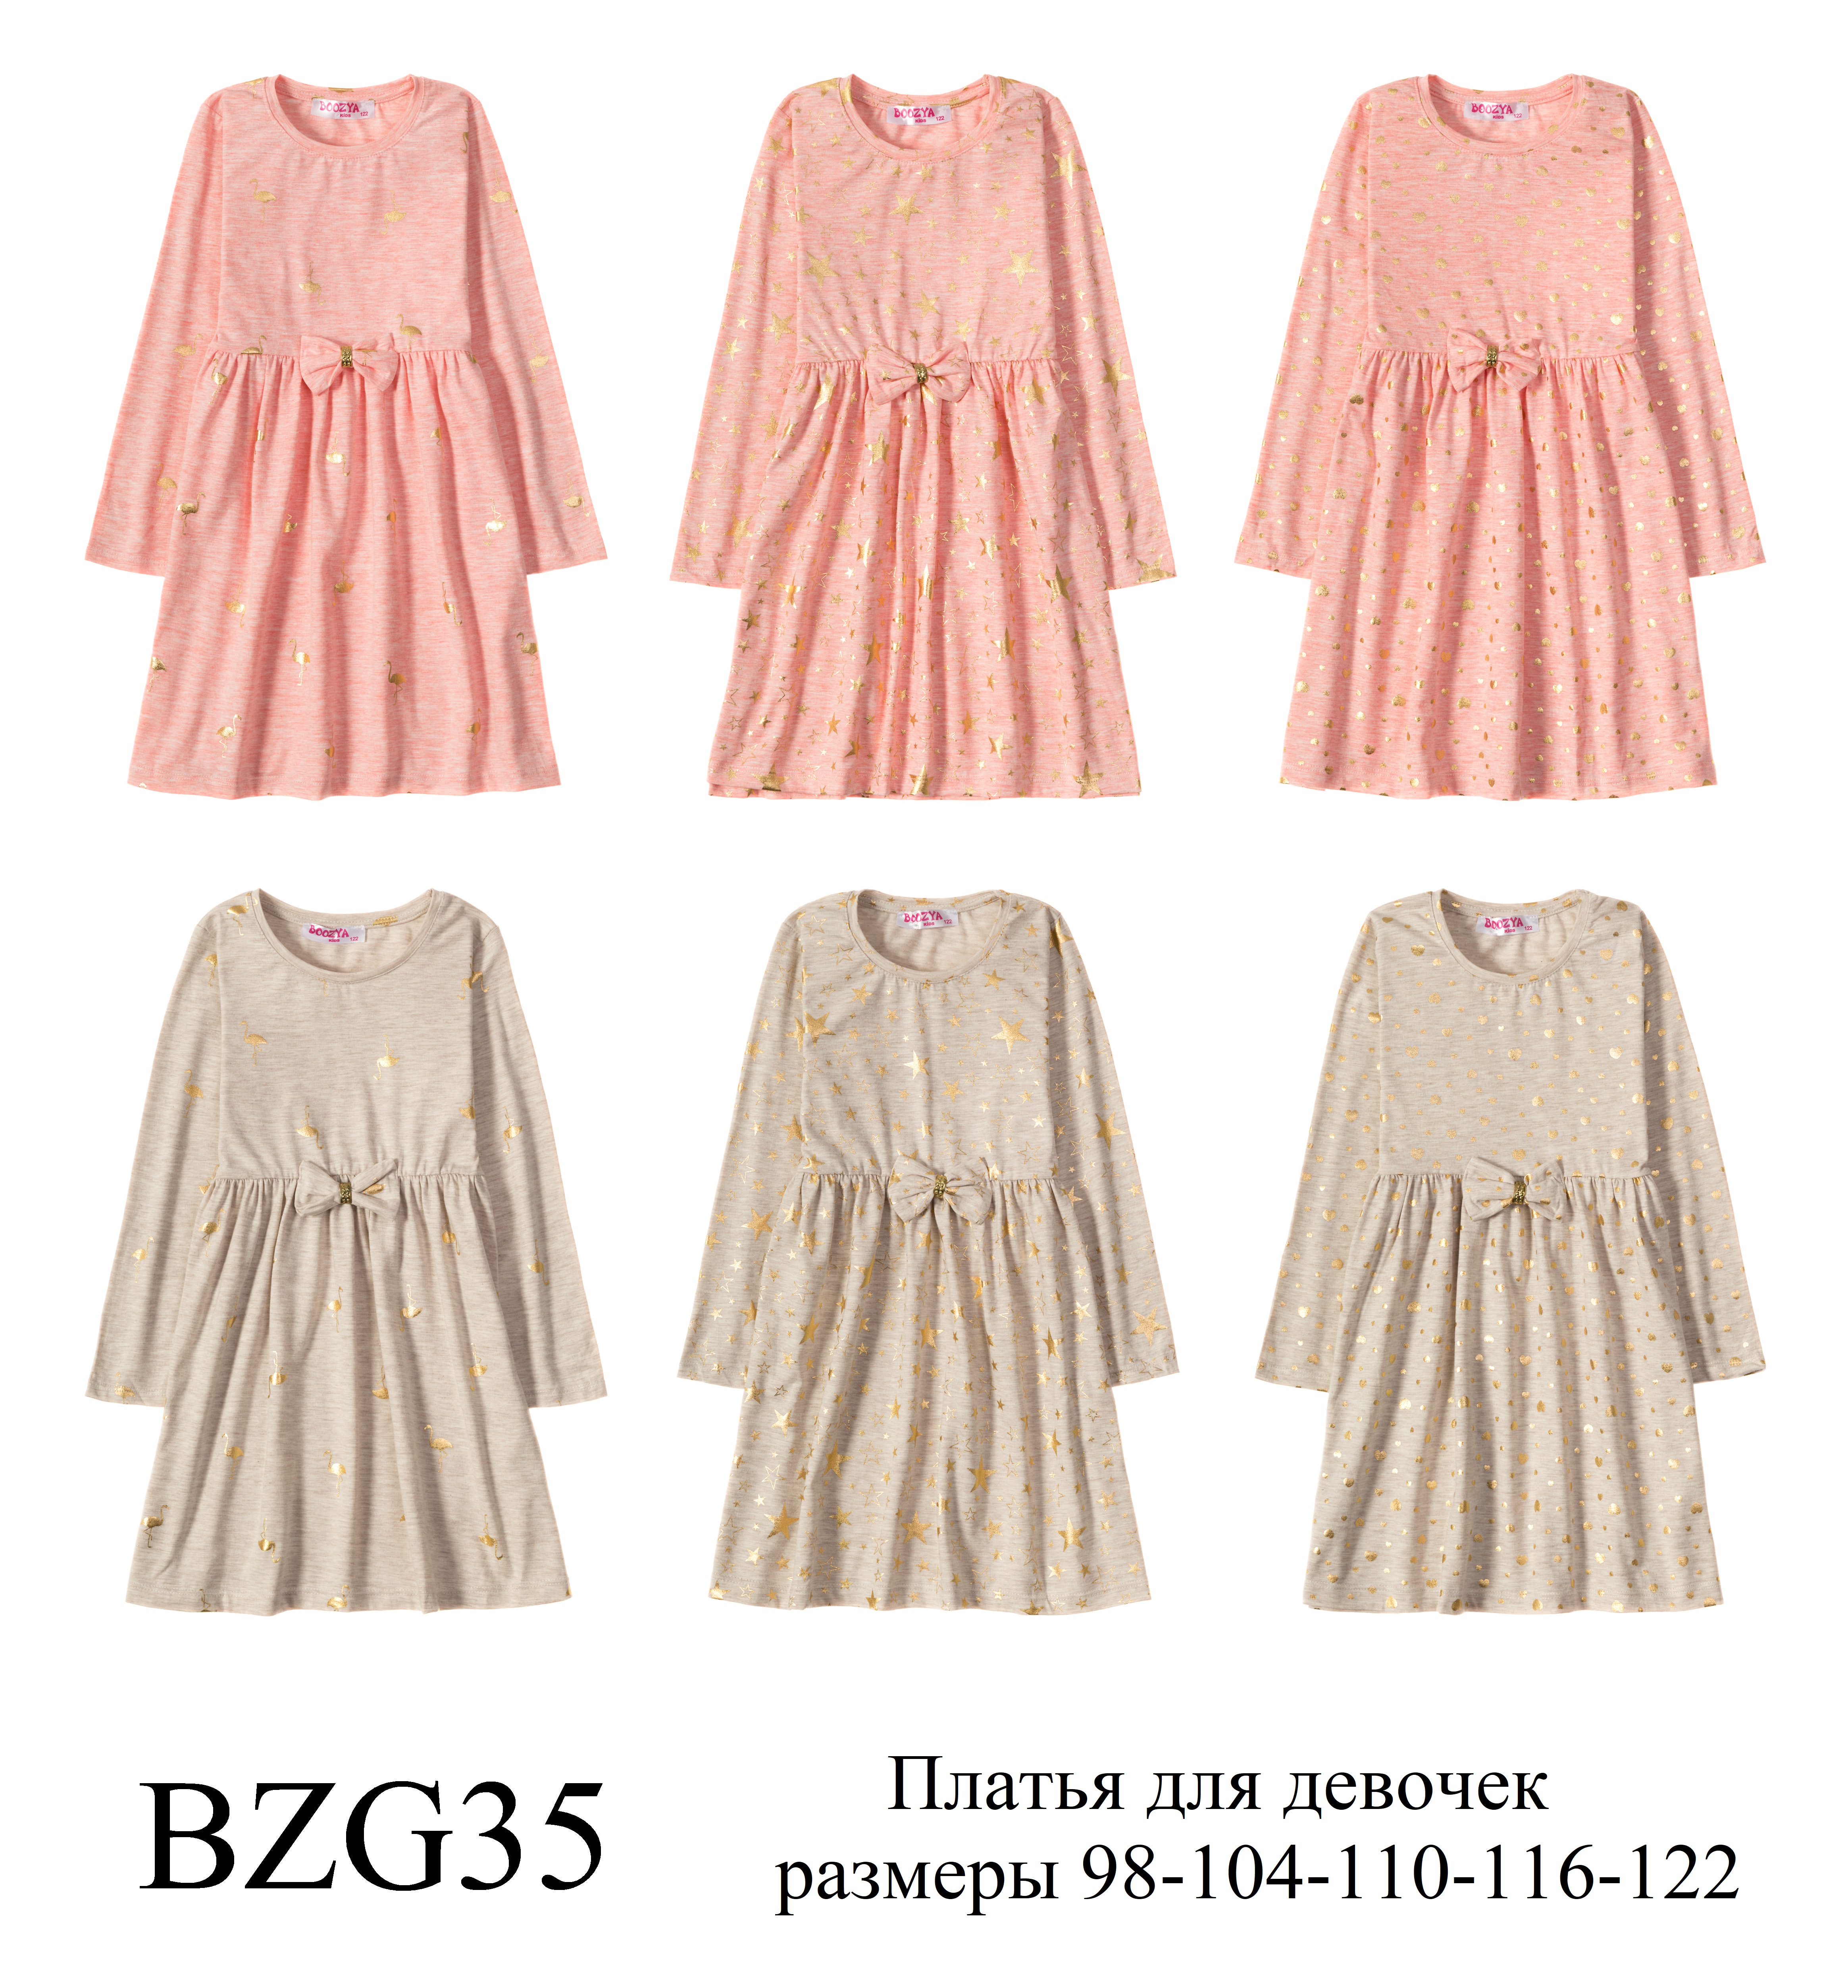 Платья для девочек "Golden flamingos"